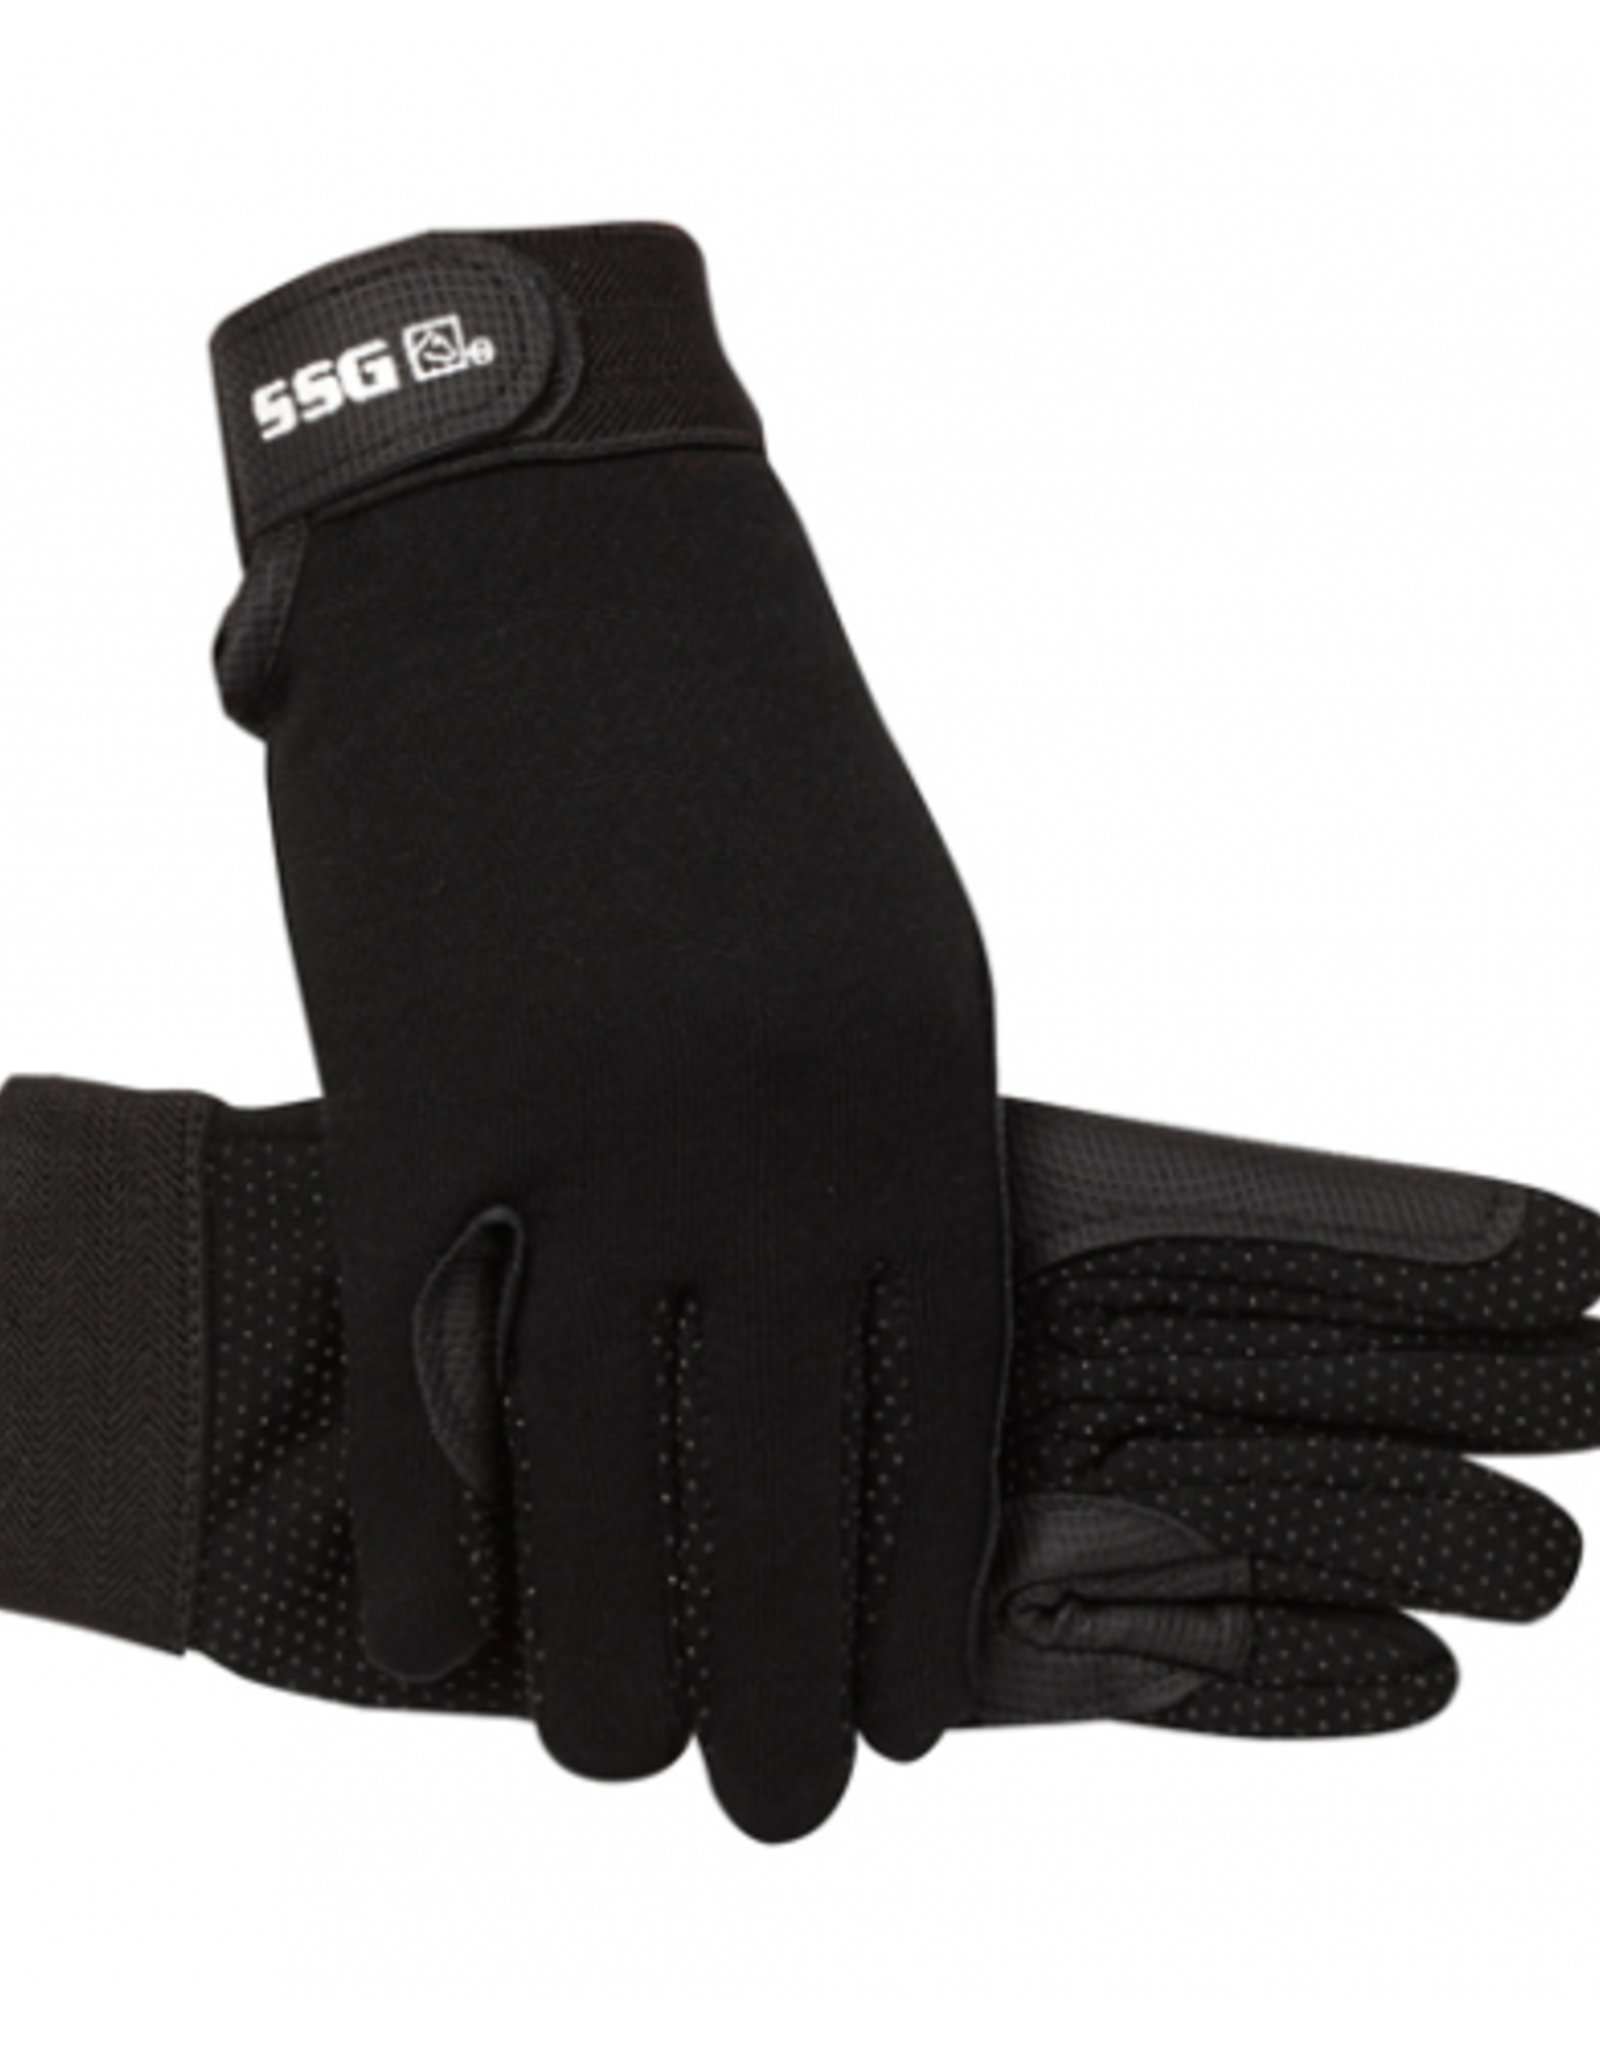 SSG Winter Gripper Glove